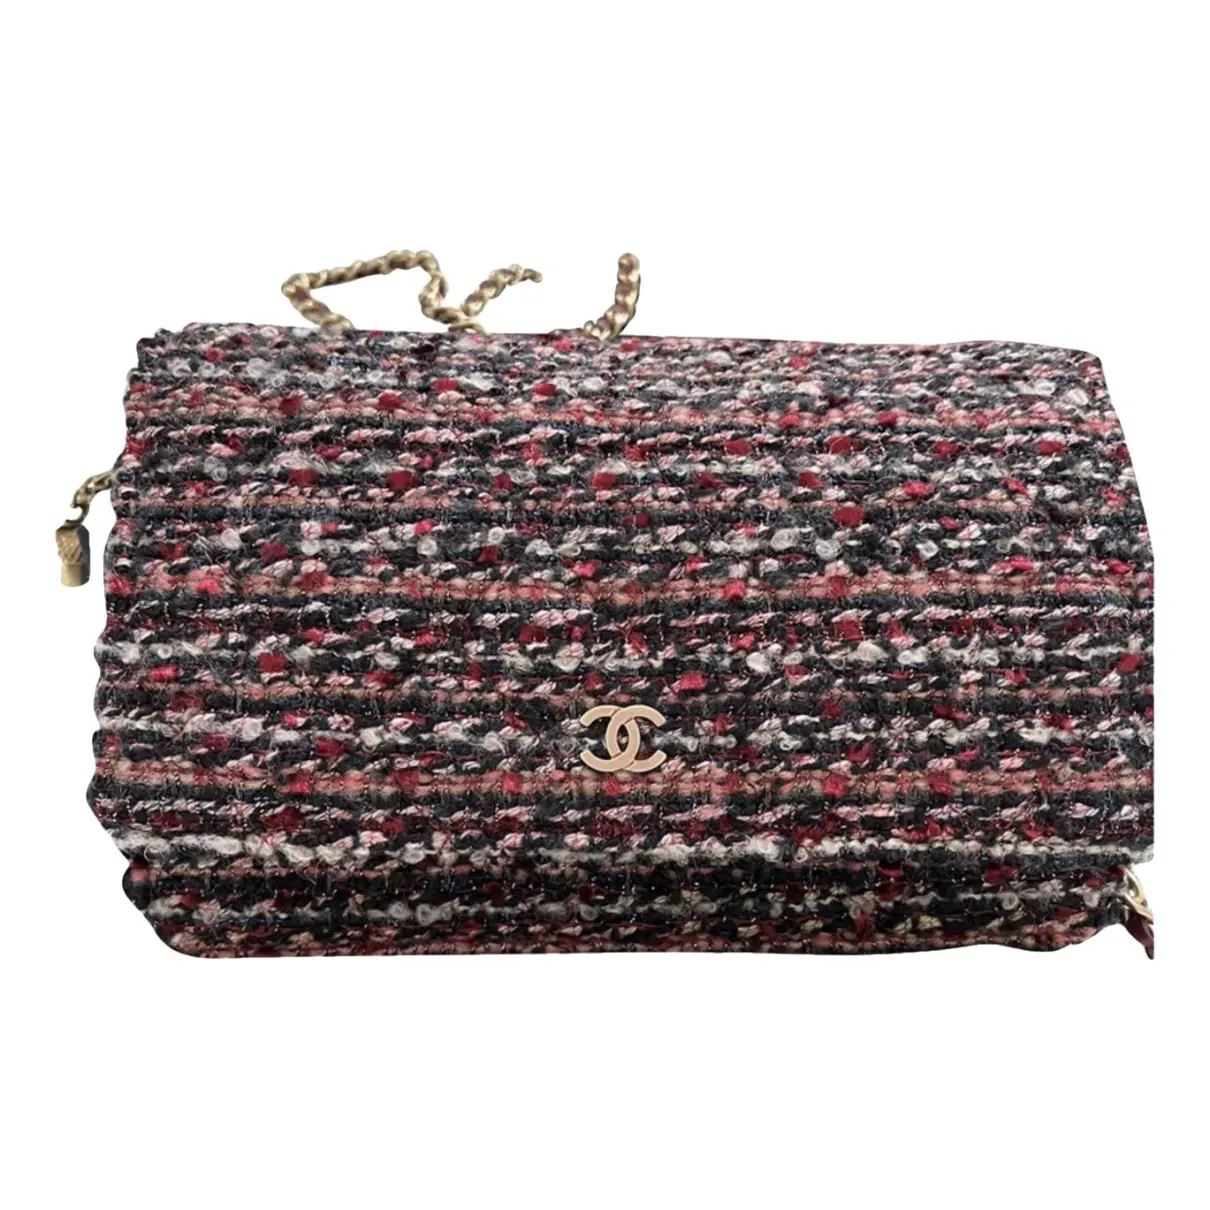 Wallet on Chain tweed handbag